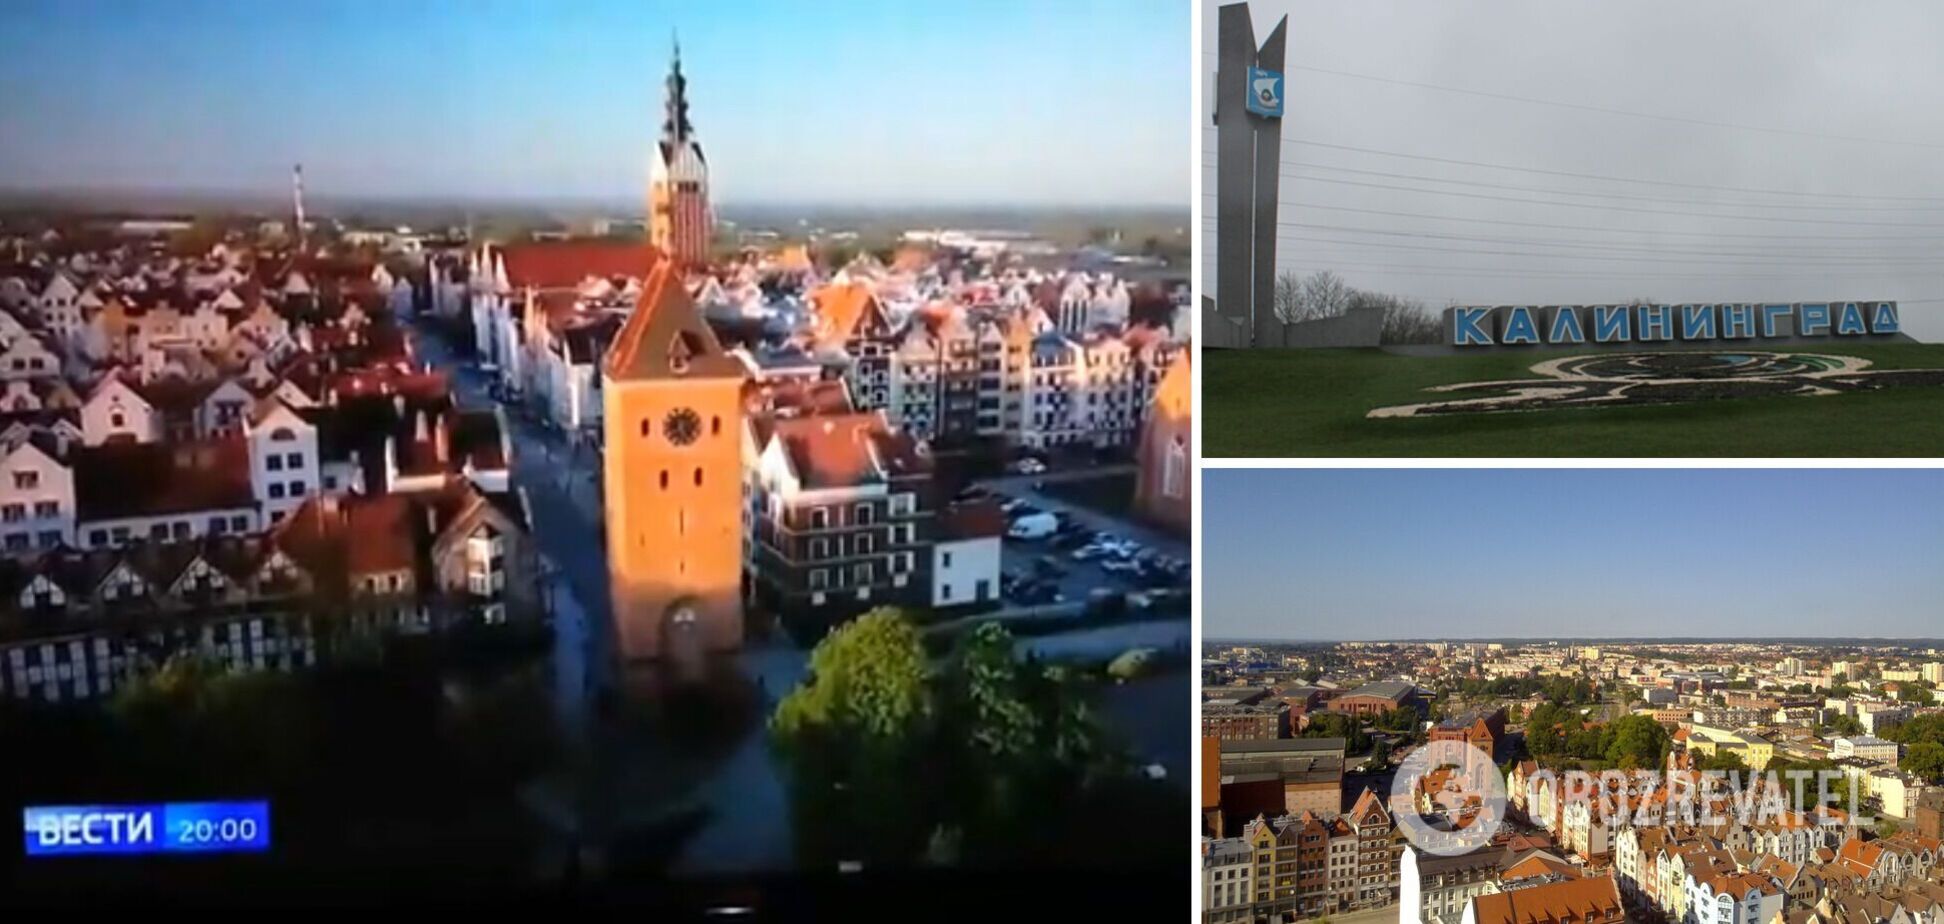 Пропагандисти Путіна похвалилися відео 'квітучого Калінінграда', але оконфузились: на кадрах була Польща. Відео